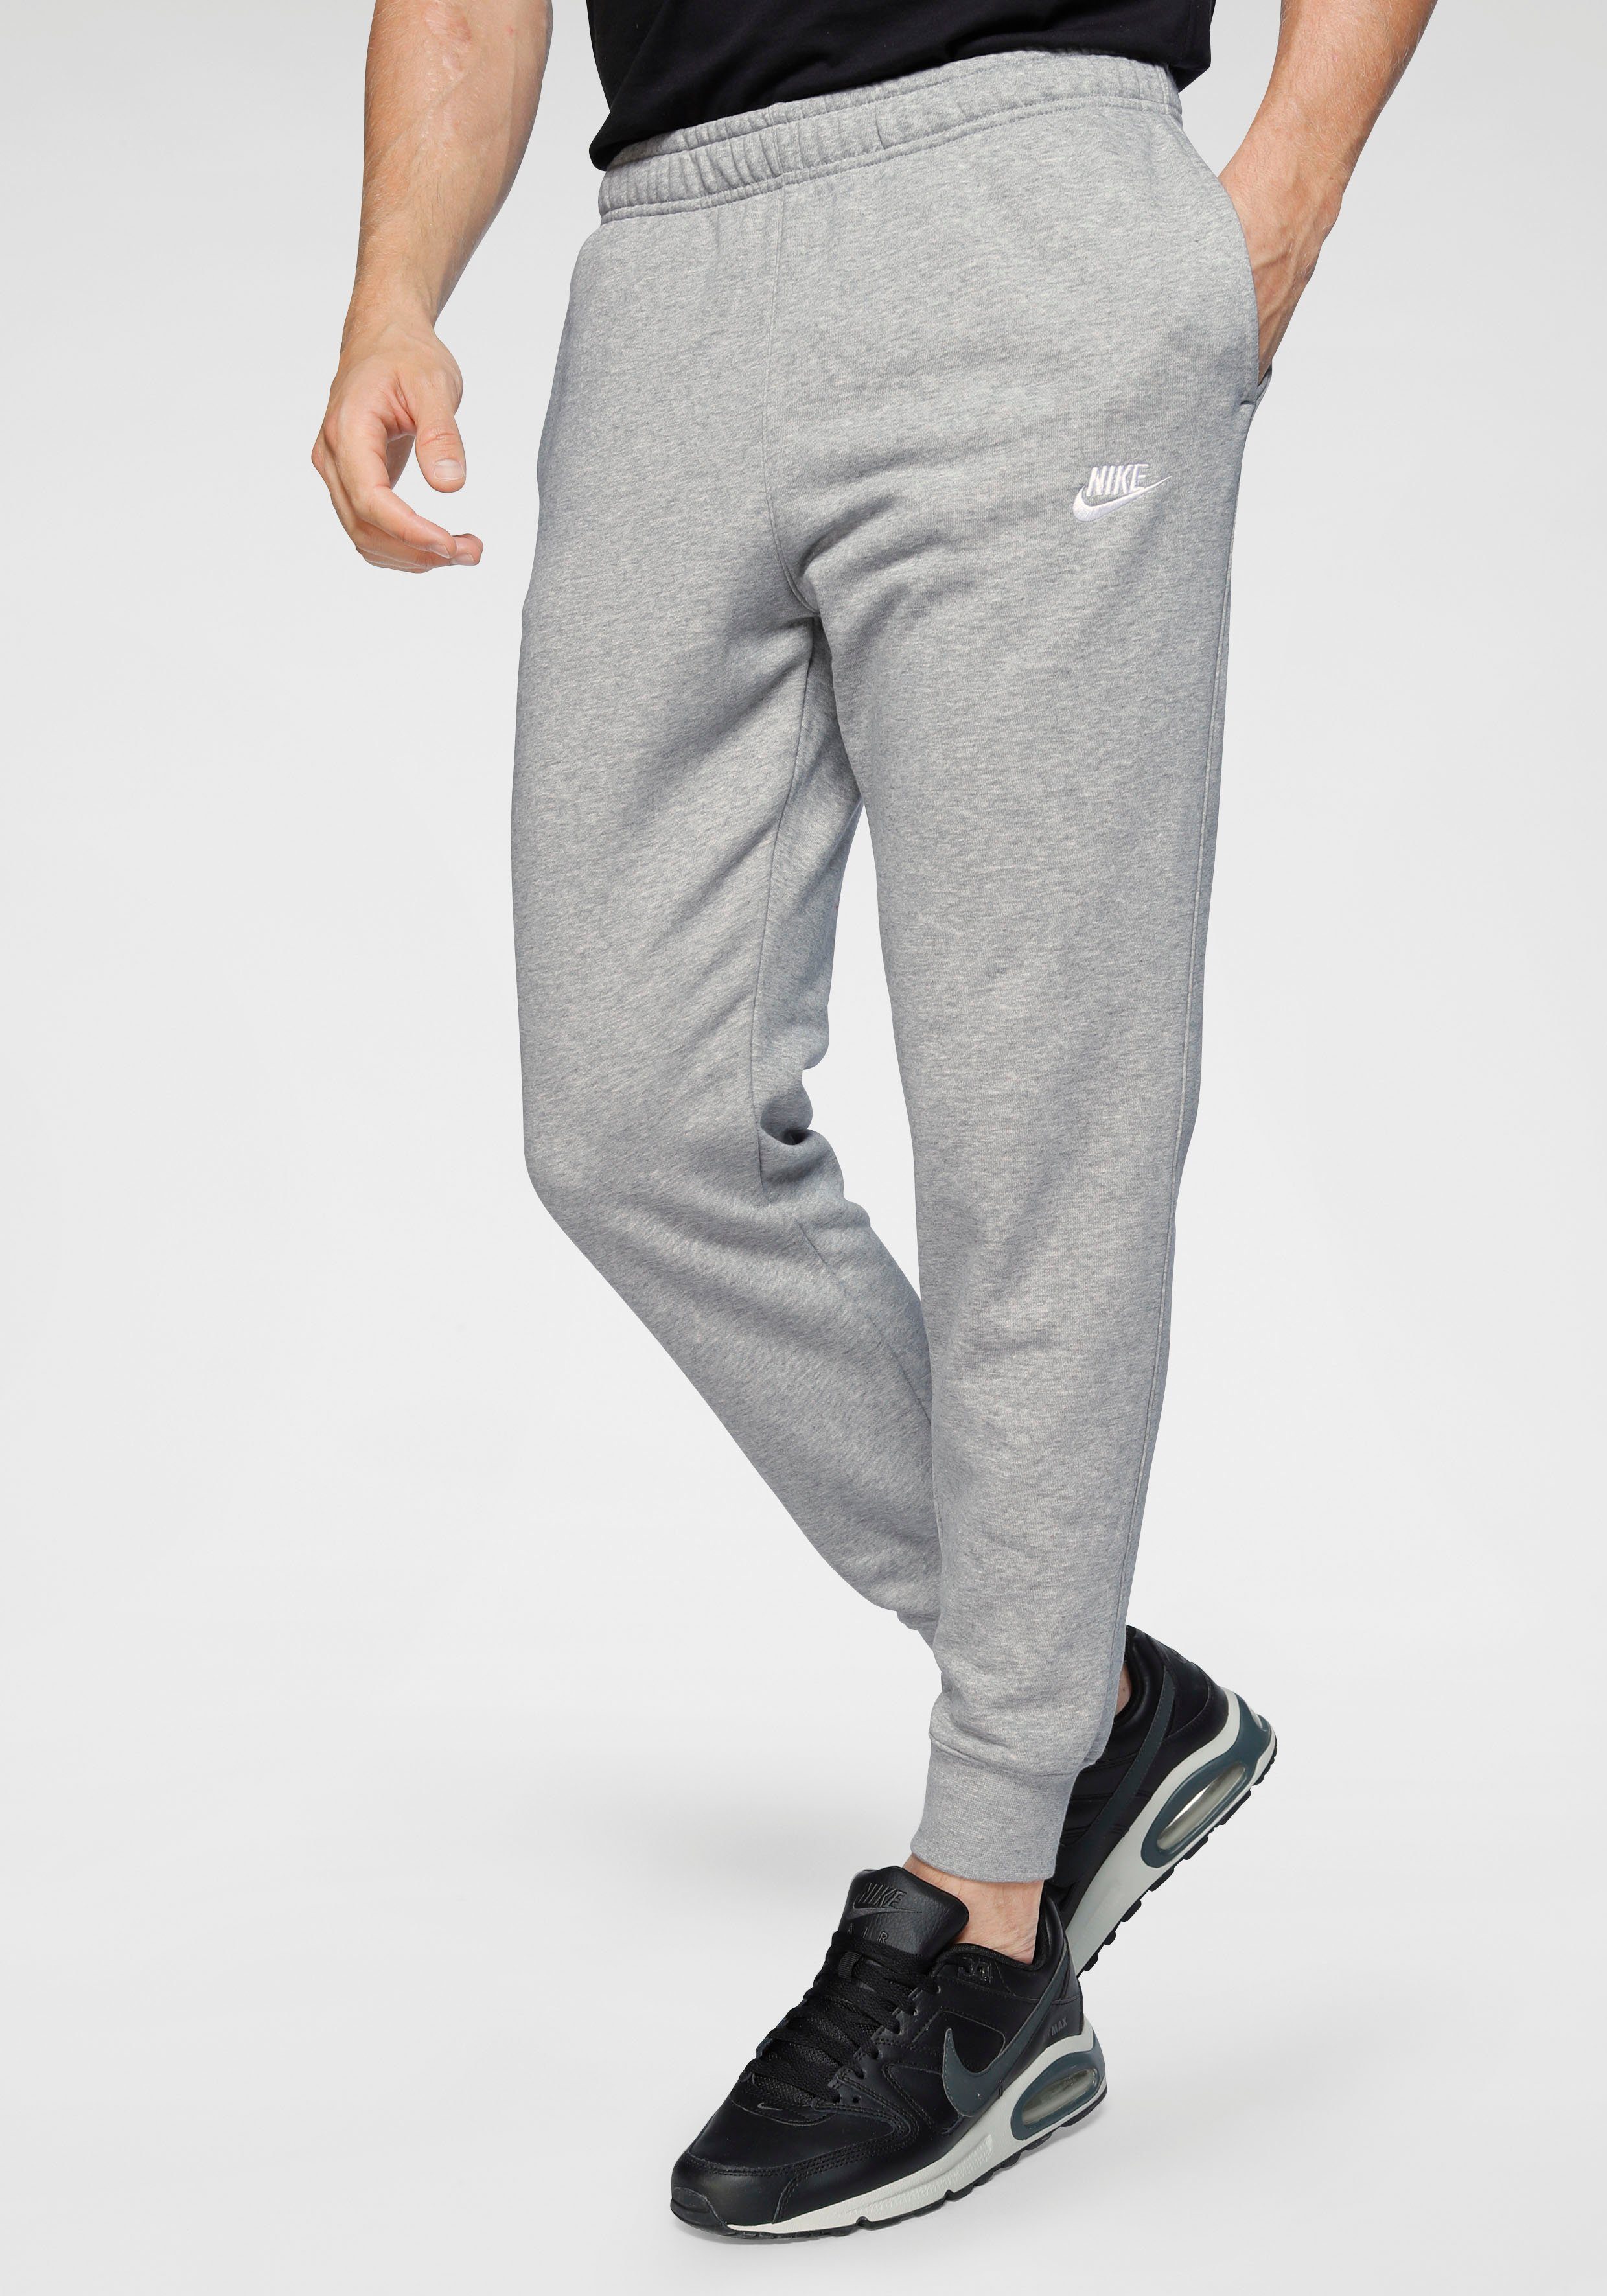 Graue Nike Jogginghosen für Herren online kaufen | OTTO